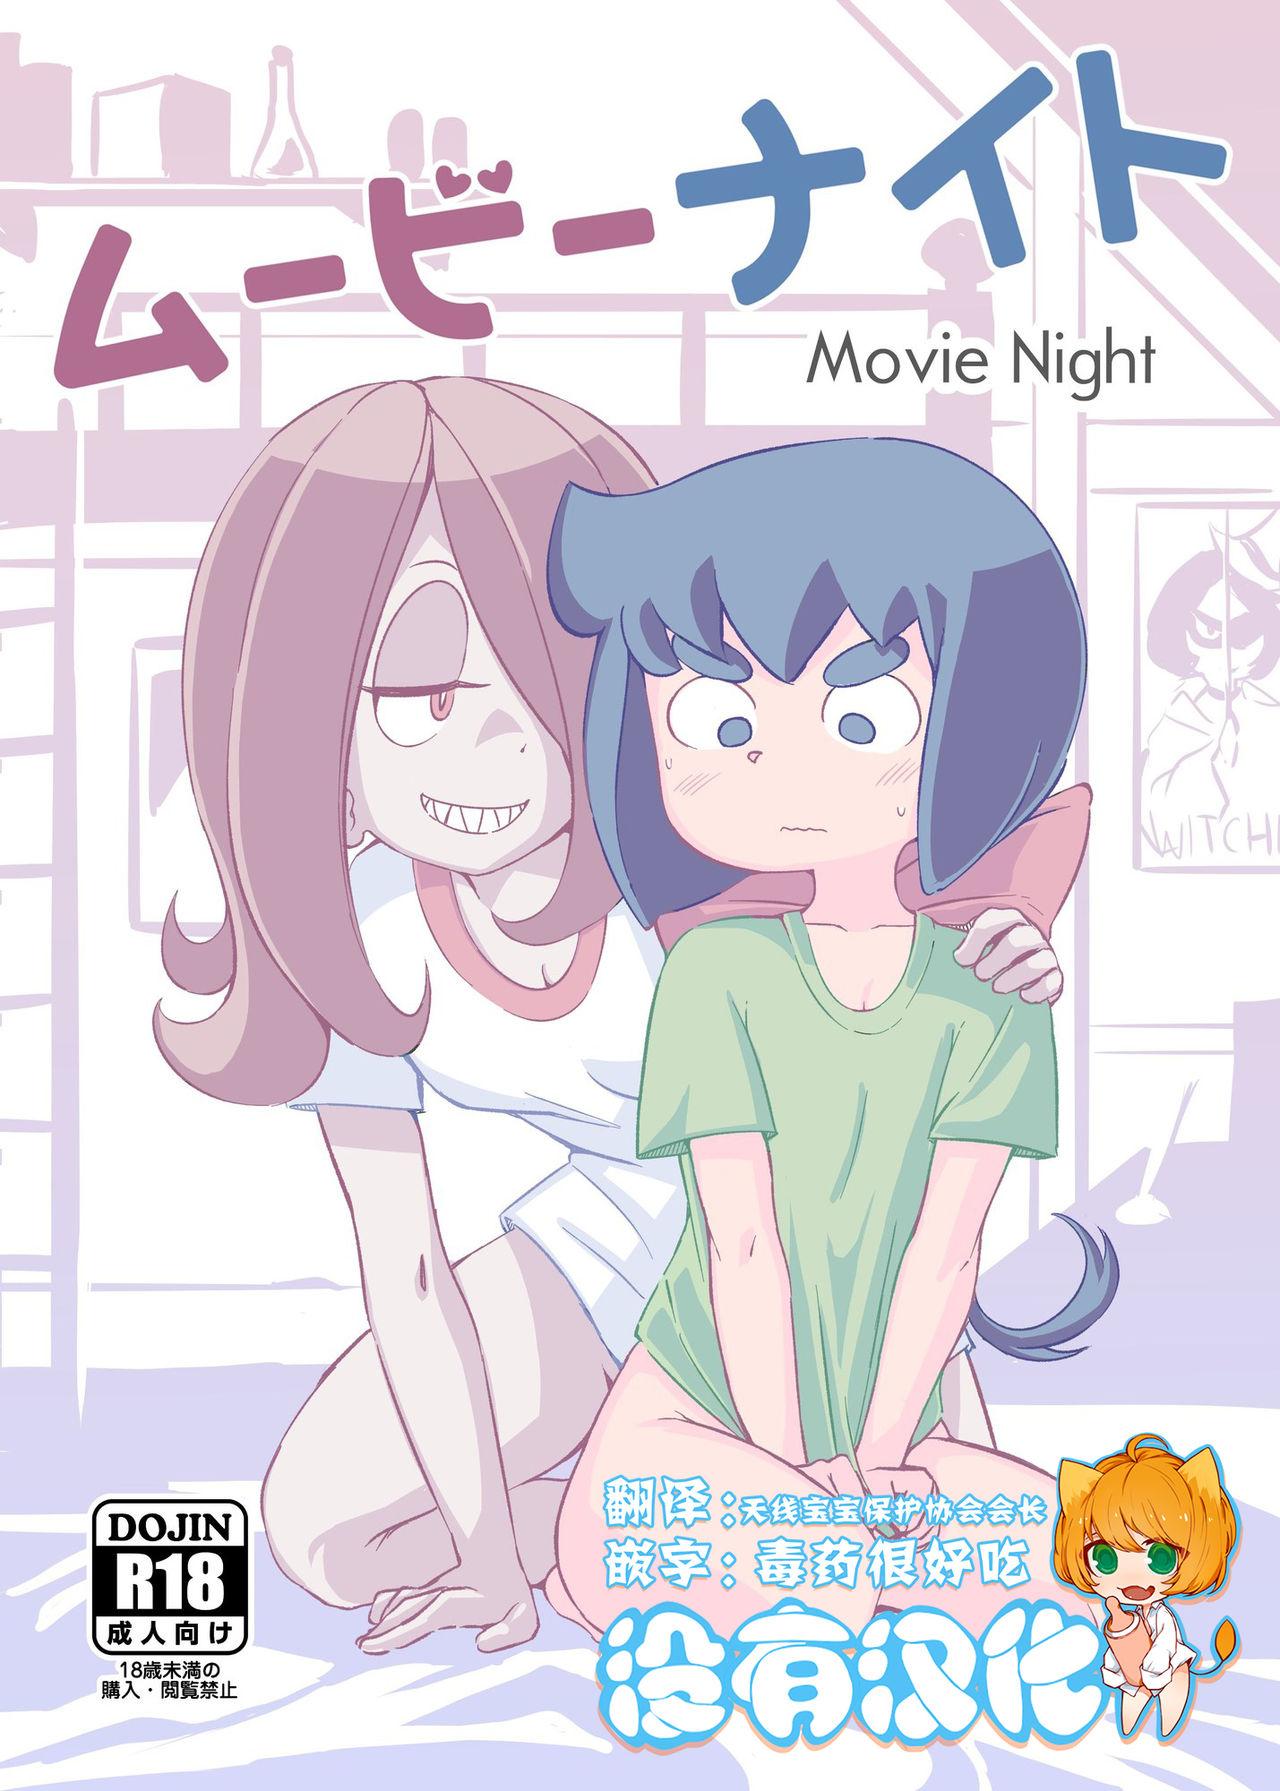 Manga porn movie